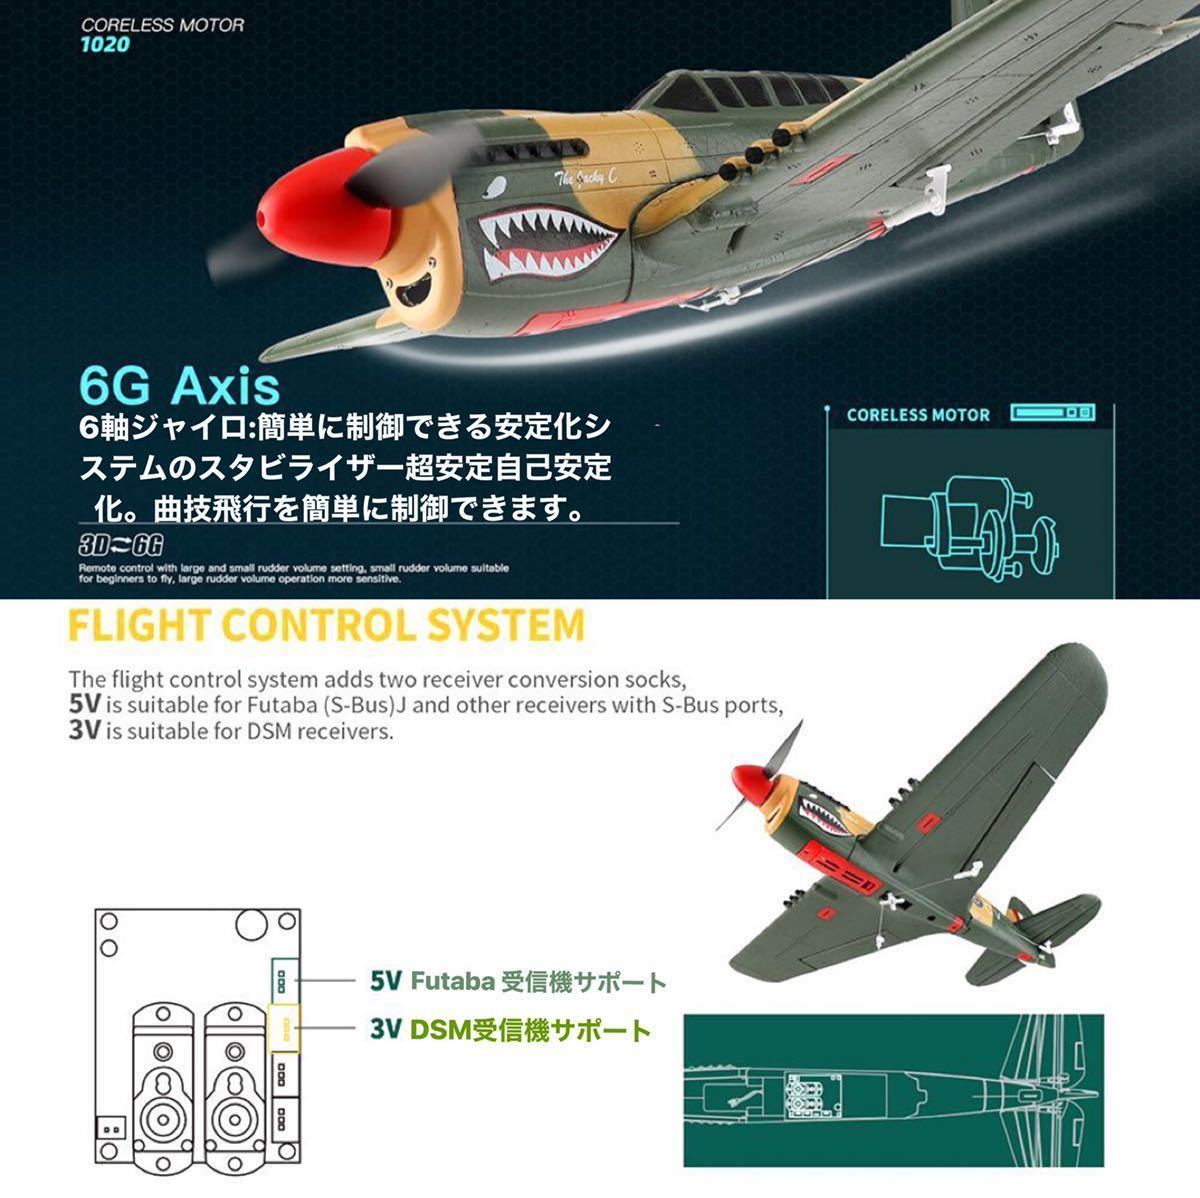 バッテリー2本 XK A220 P40戦闘機 Futaba拡張 6軸ジャイロ付き 飛行機 3D/6G切替 背面飛行 4CH 2.4G RCラジコンプレーン RTF 即飛行 初心者